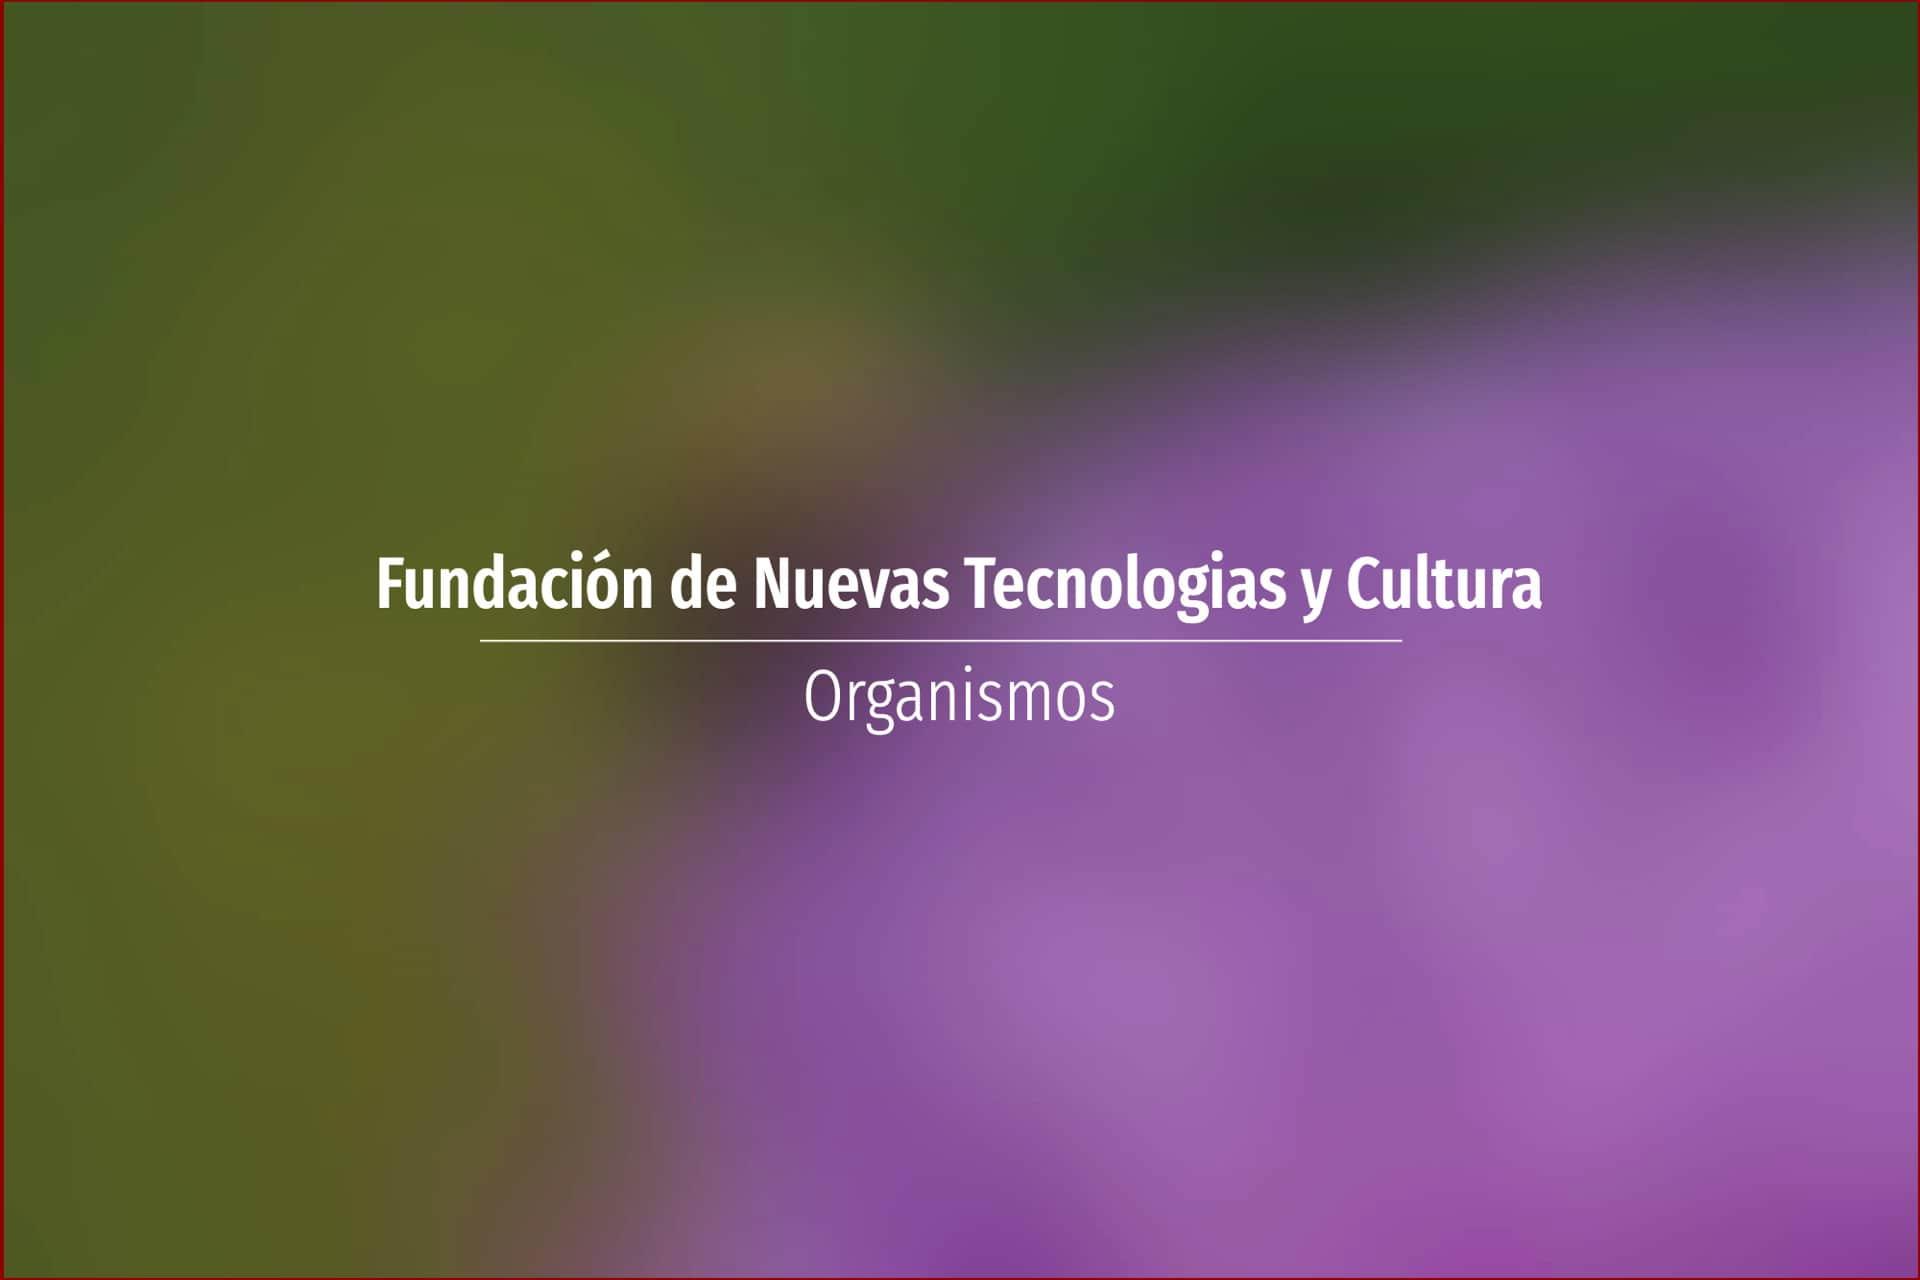 Fundación de Nuevas Tecnologias y Cultura